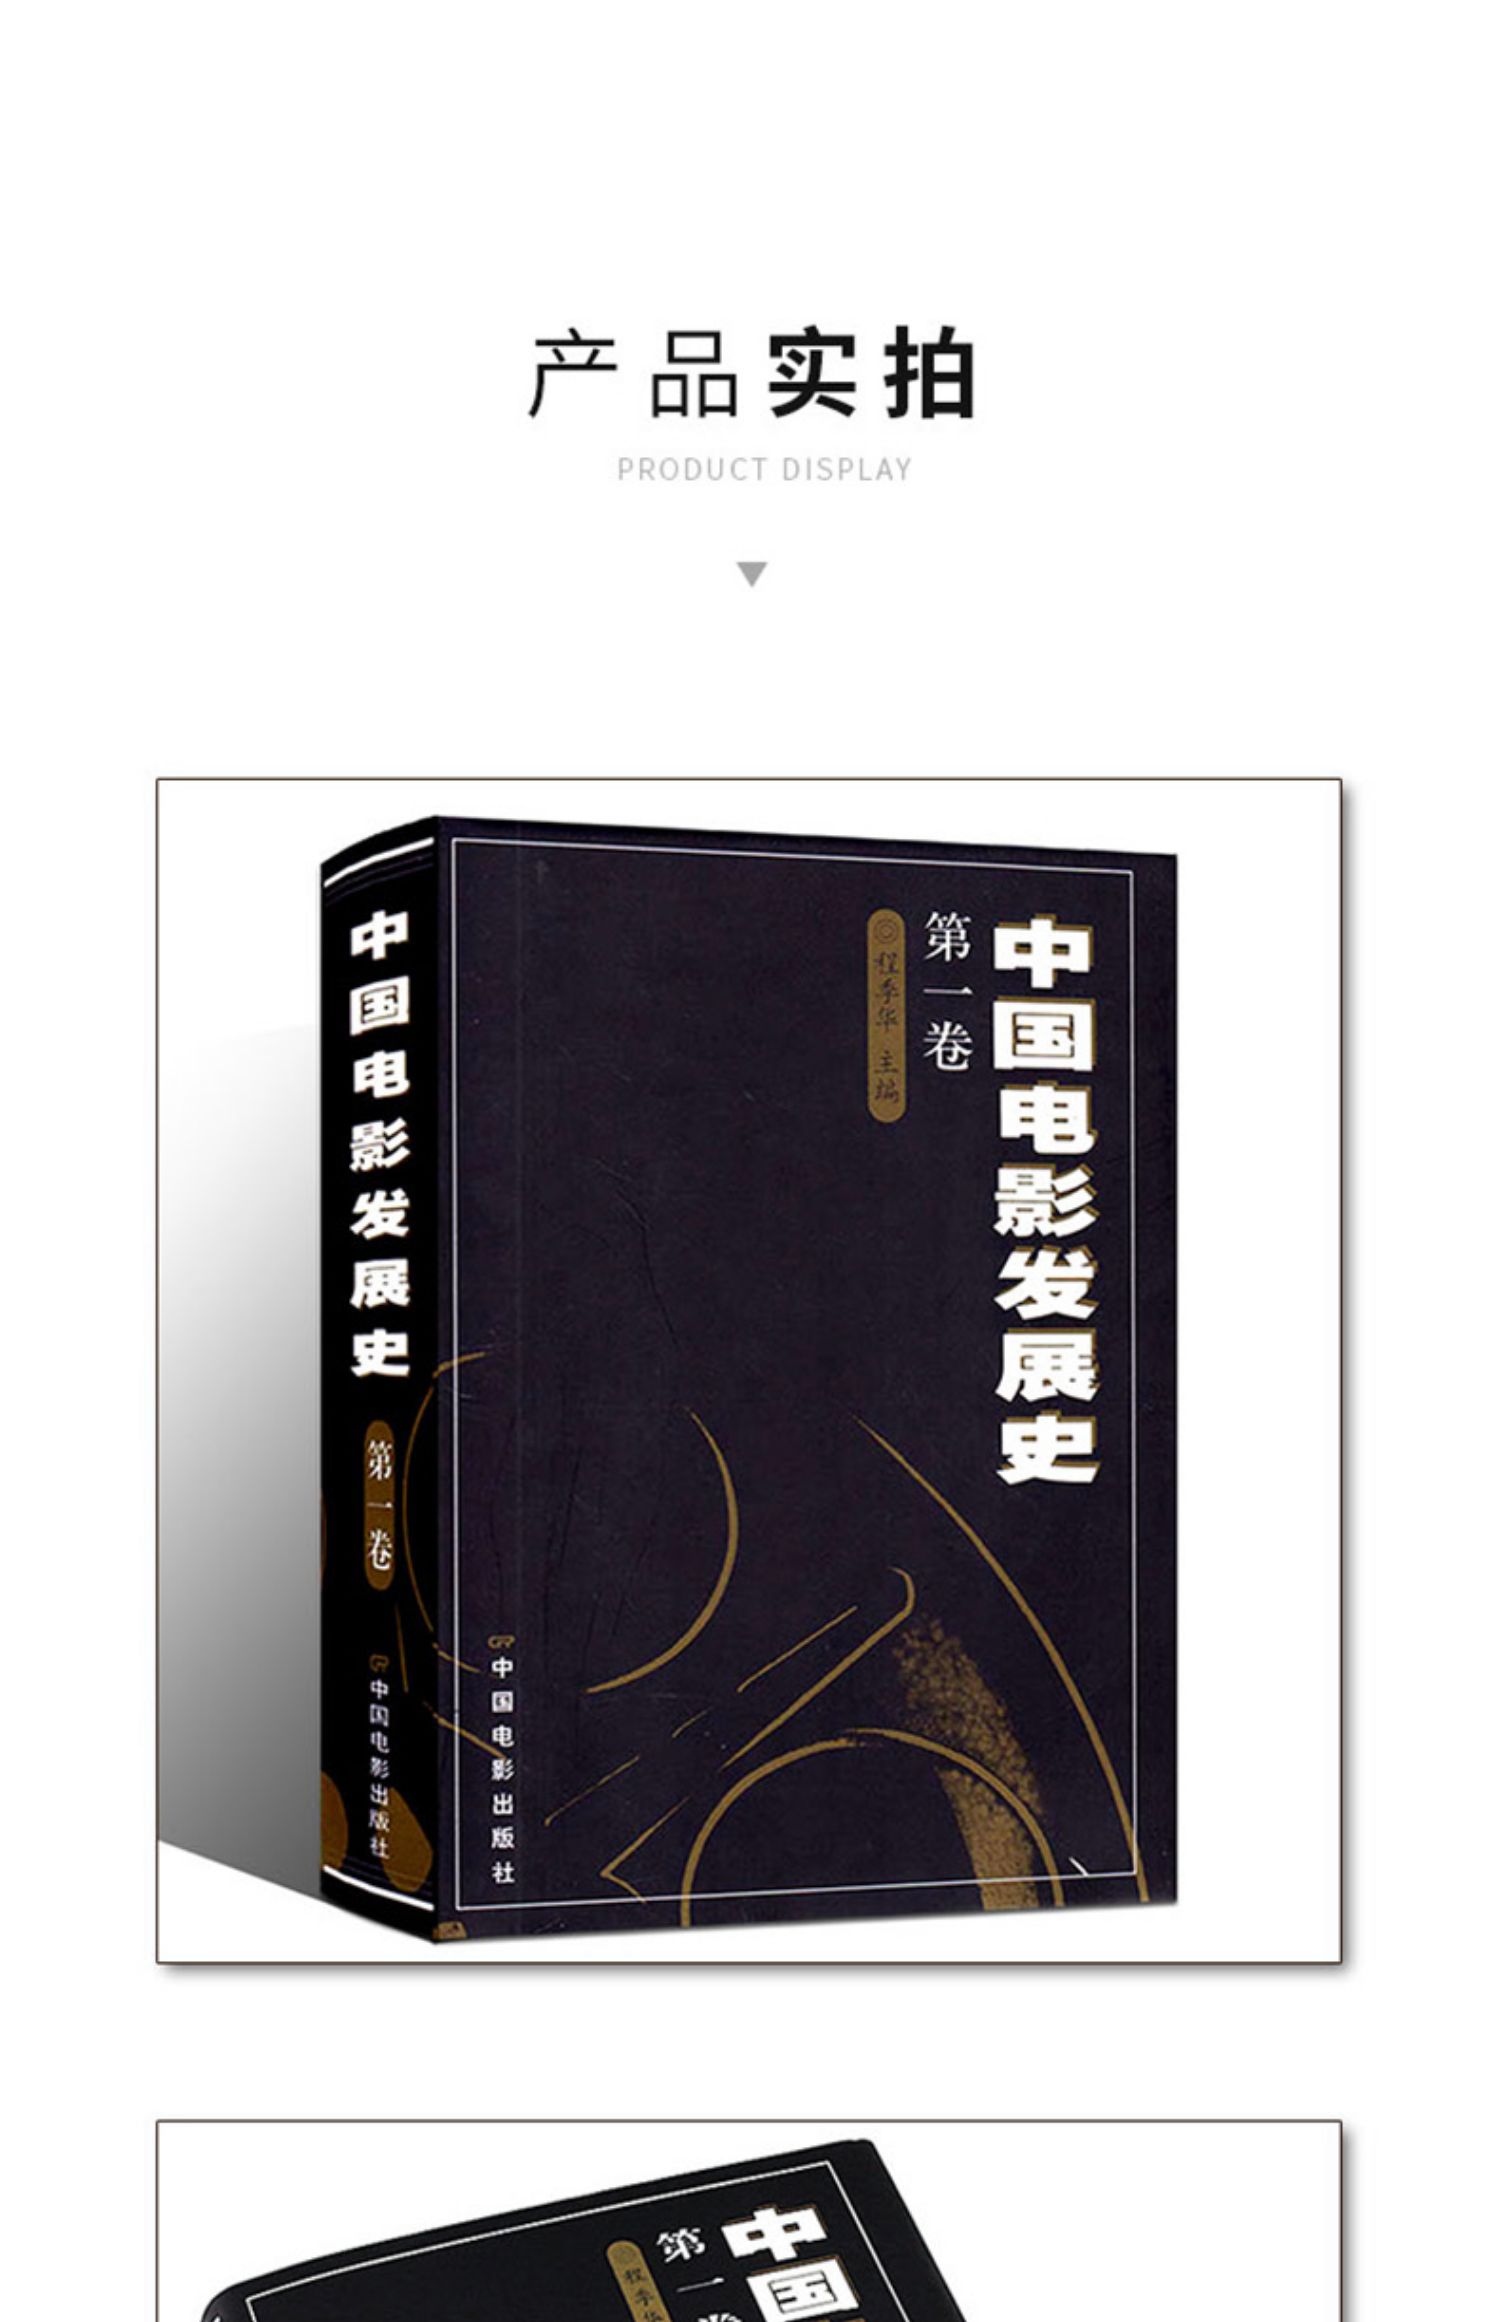 中国电影发展史第一卷9787106012243程季华主编中国电影书籍书城书店